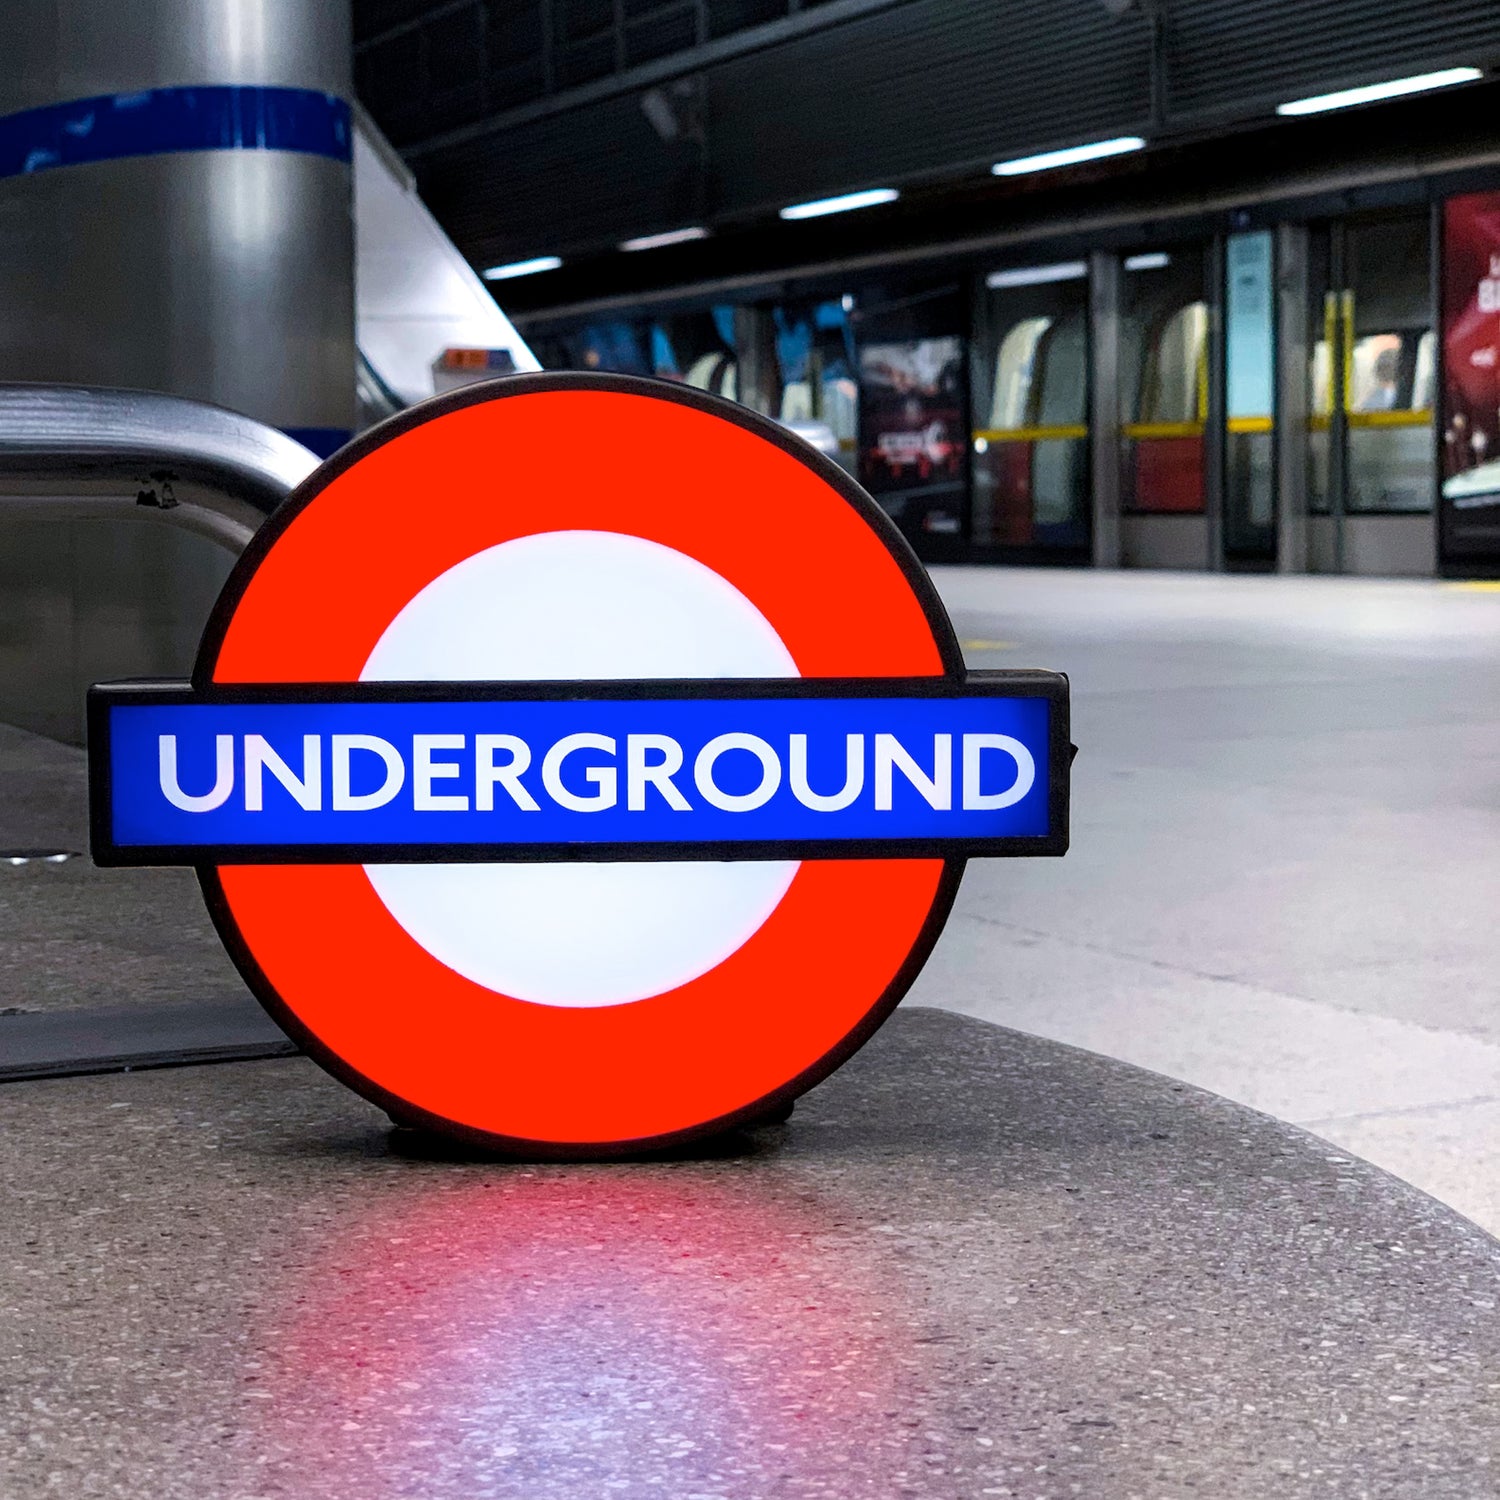 London Underground Station Signs